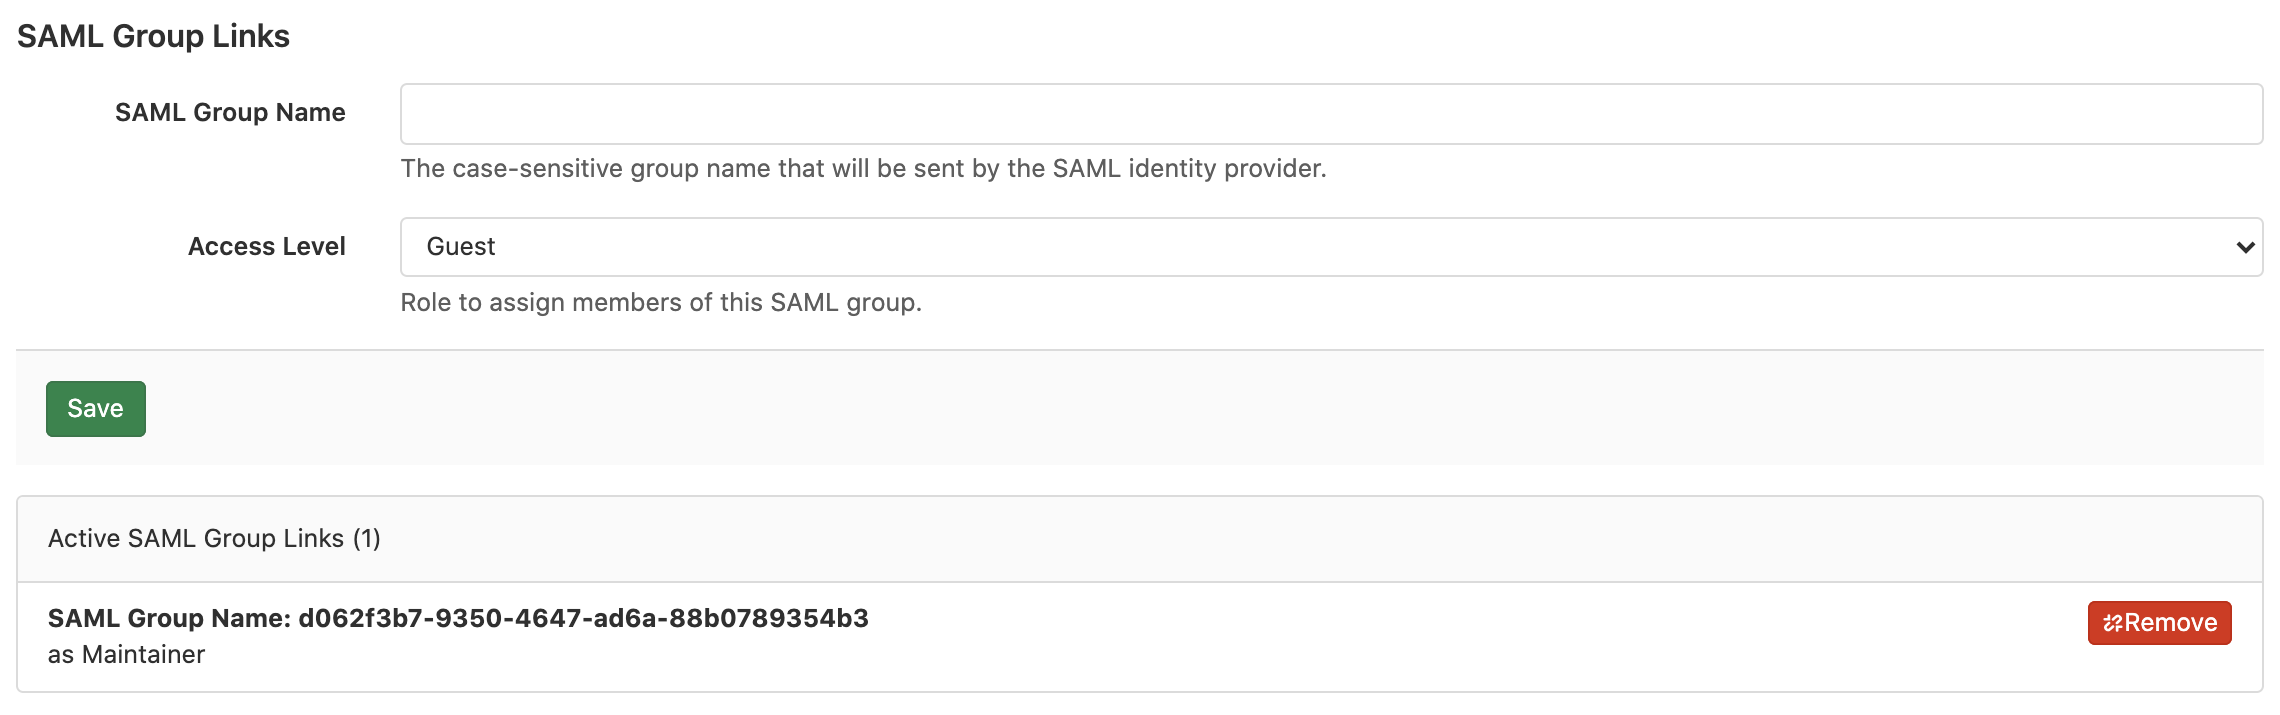 SAML Group Sync for GitLab.com